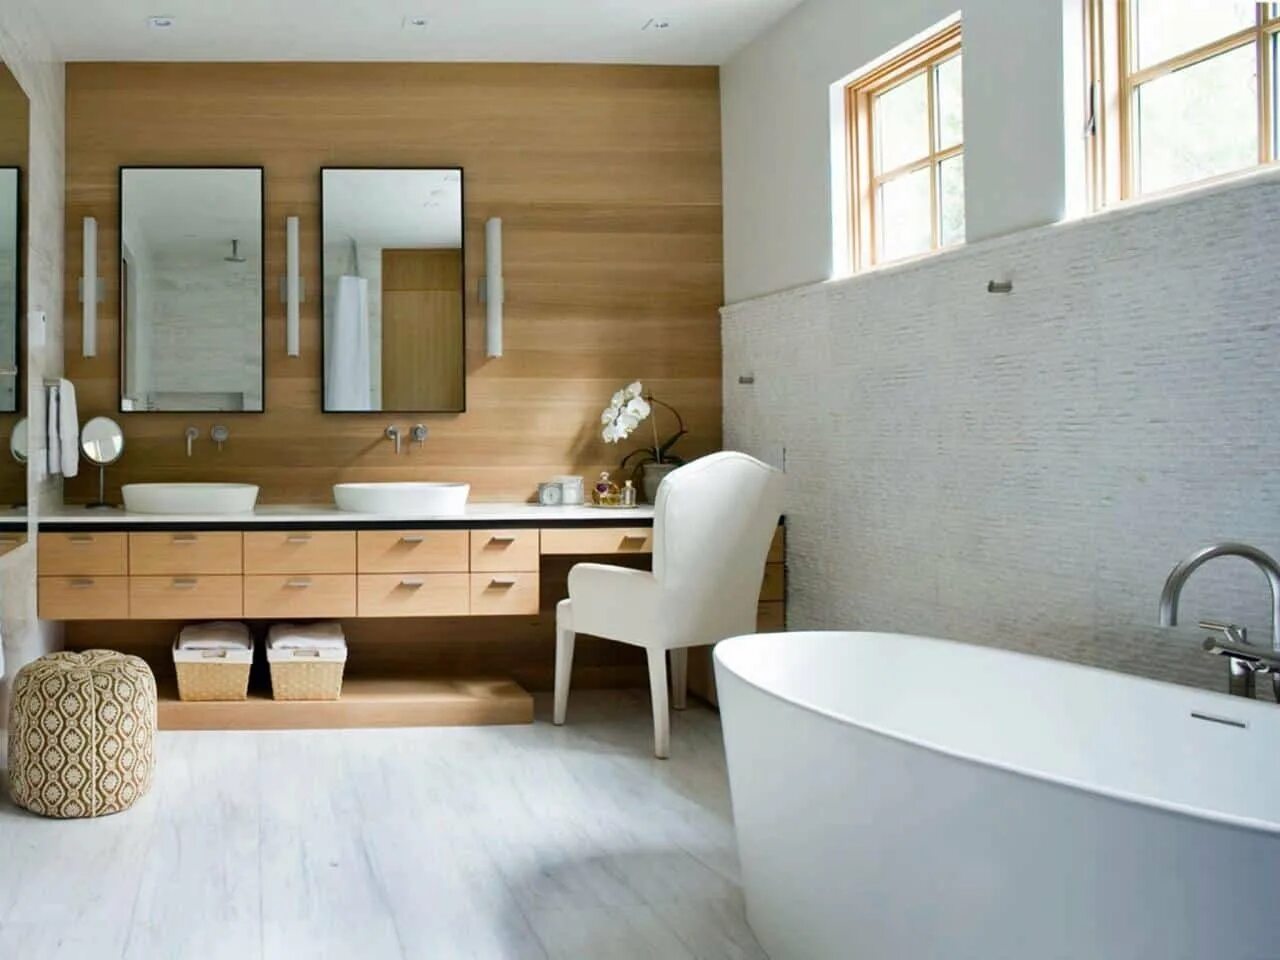 Мебель для ванны дуб. Ванная интерьер. Дизайн интерьера ванной комнаты. Ванная с деревянной отделкой. Ванная комната с деревом.